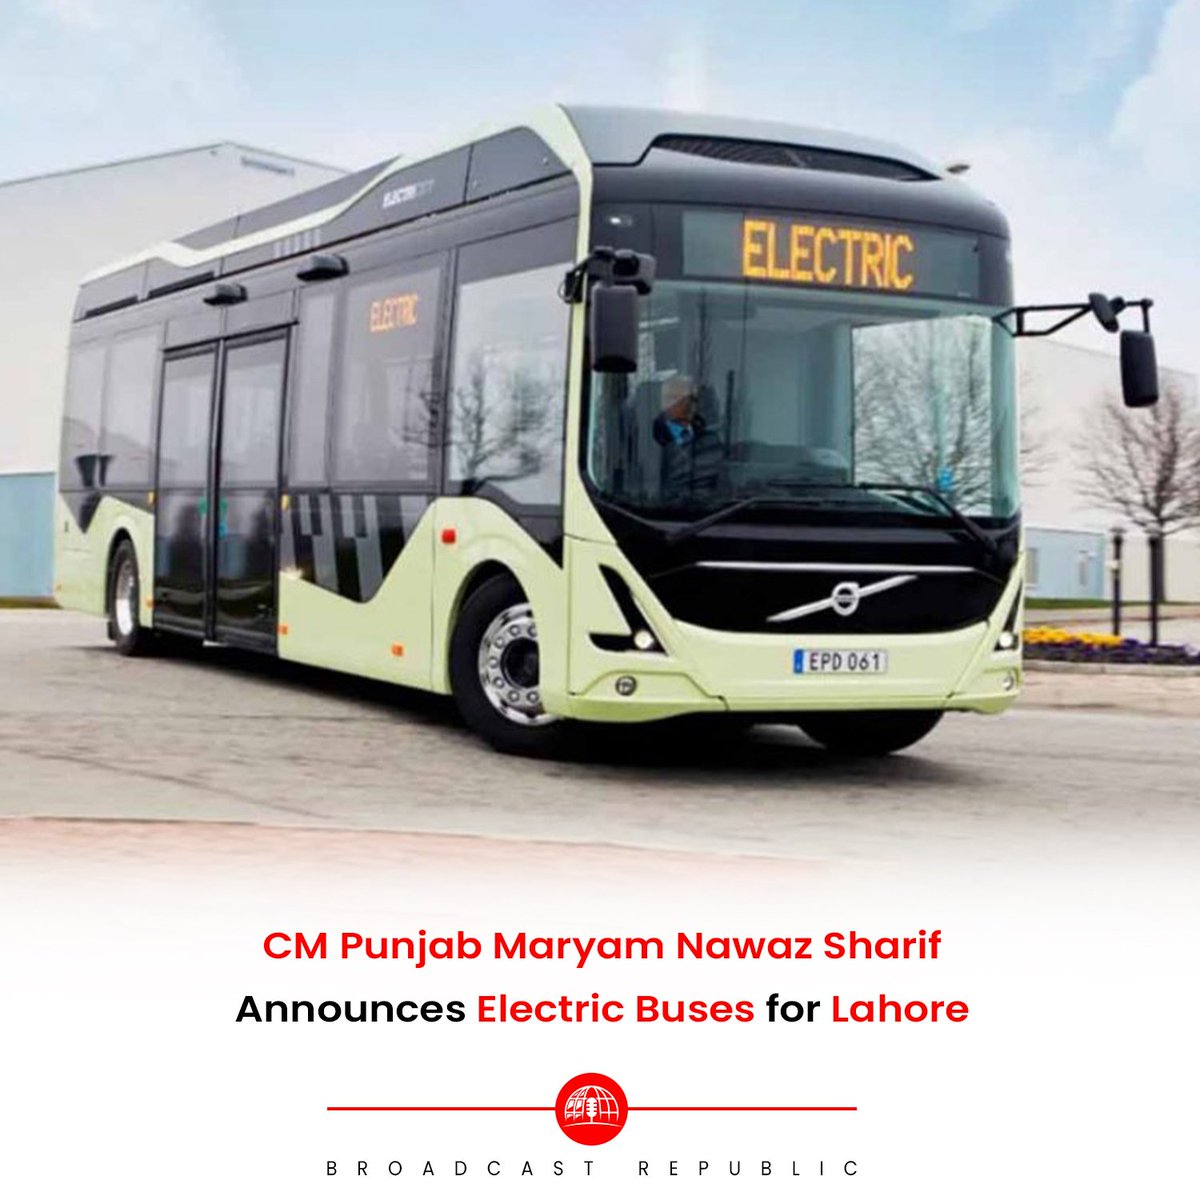 CM Punjab Maryam Nawaz Sharif Announces Electric Buses for Lahore. #MaryamNawaz #ElectricBus #Lahore